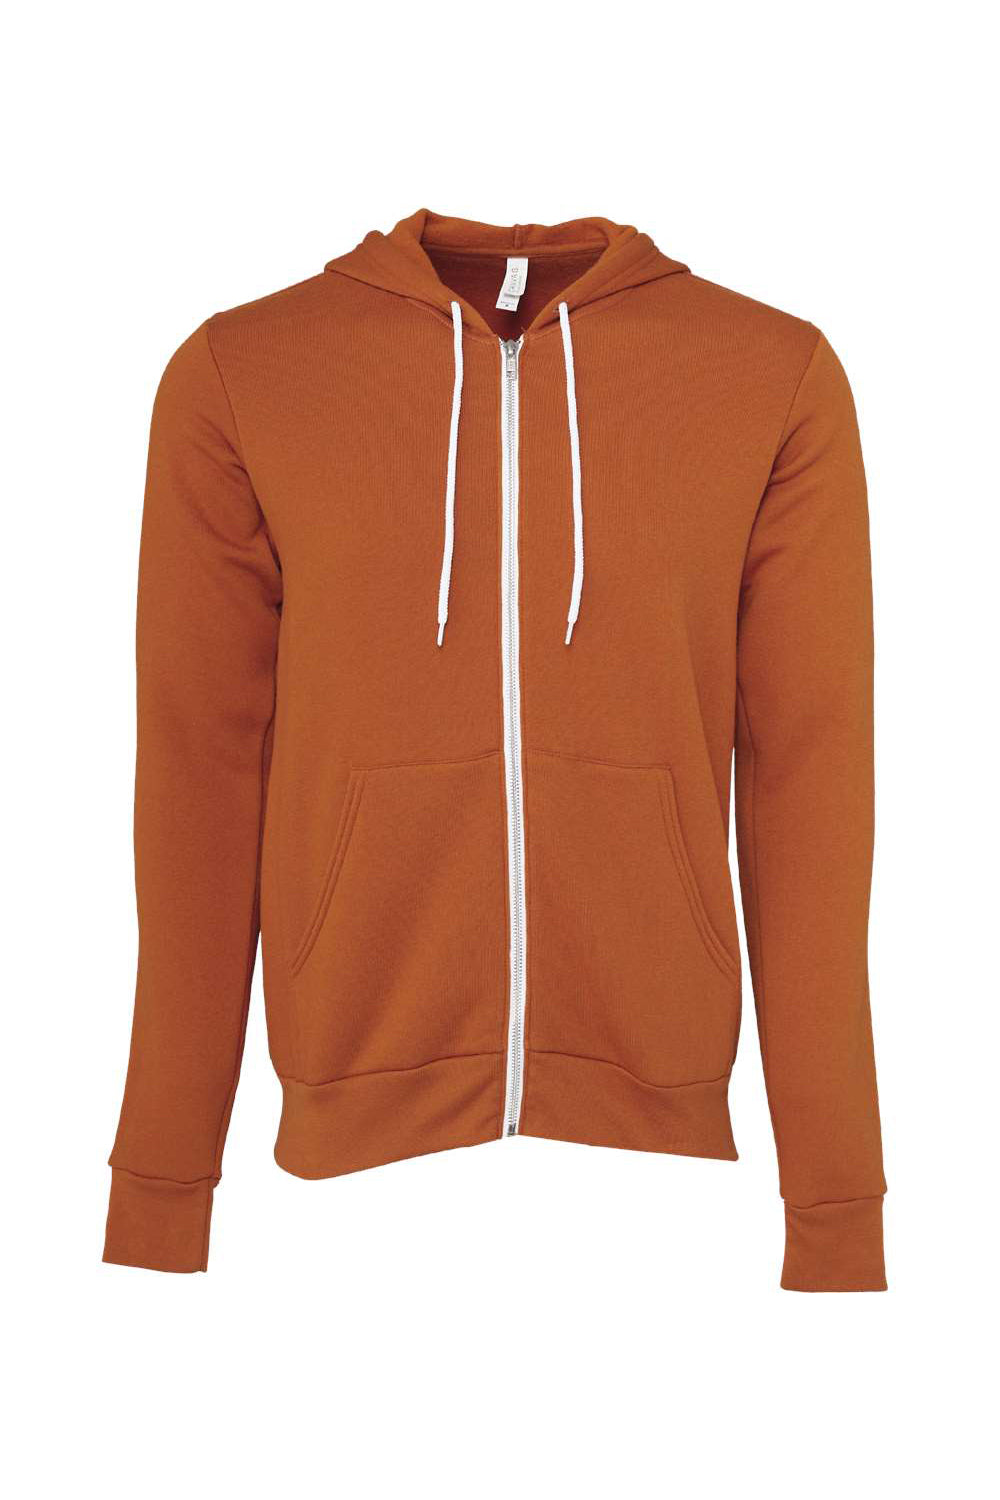 Bella + Canvas BC3739/3739 Mens Fleece Full Zip Hooded Sweatshirt Hoodie Autumn Orange Flat Front